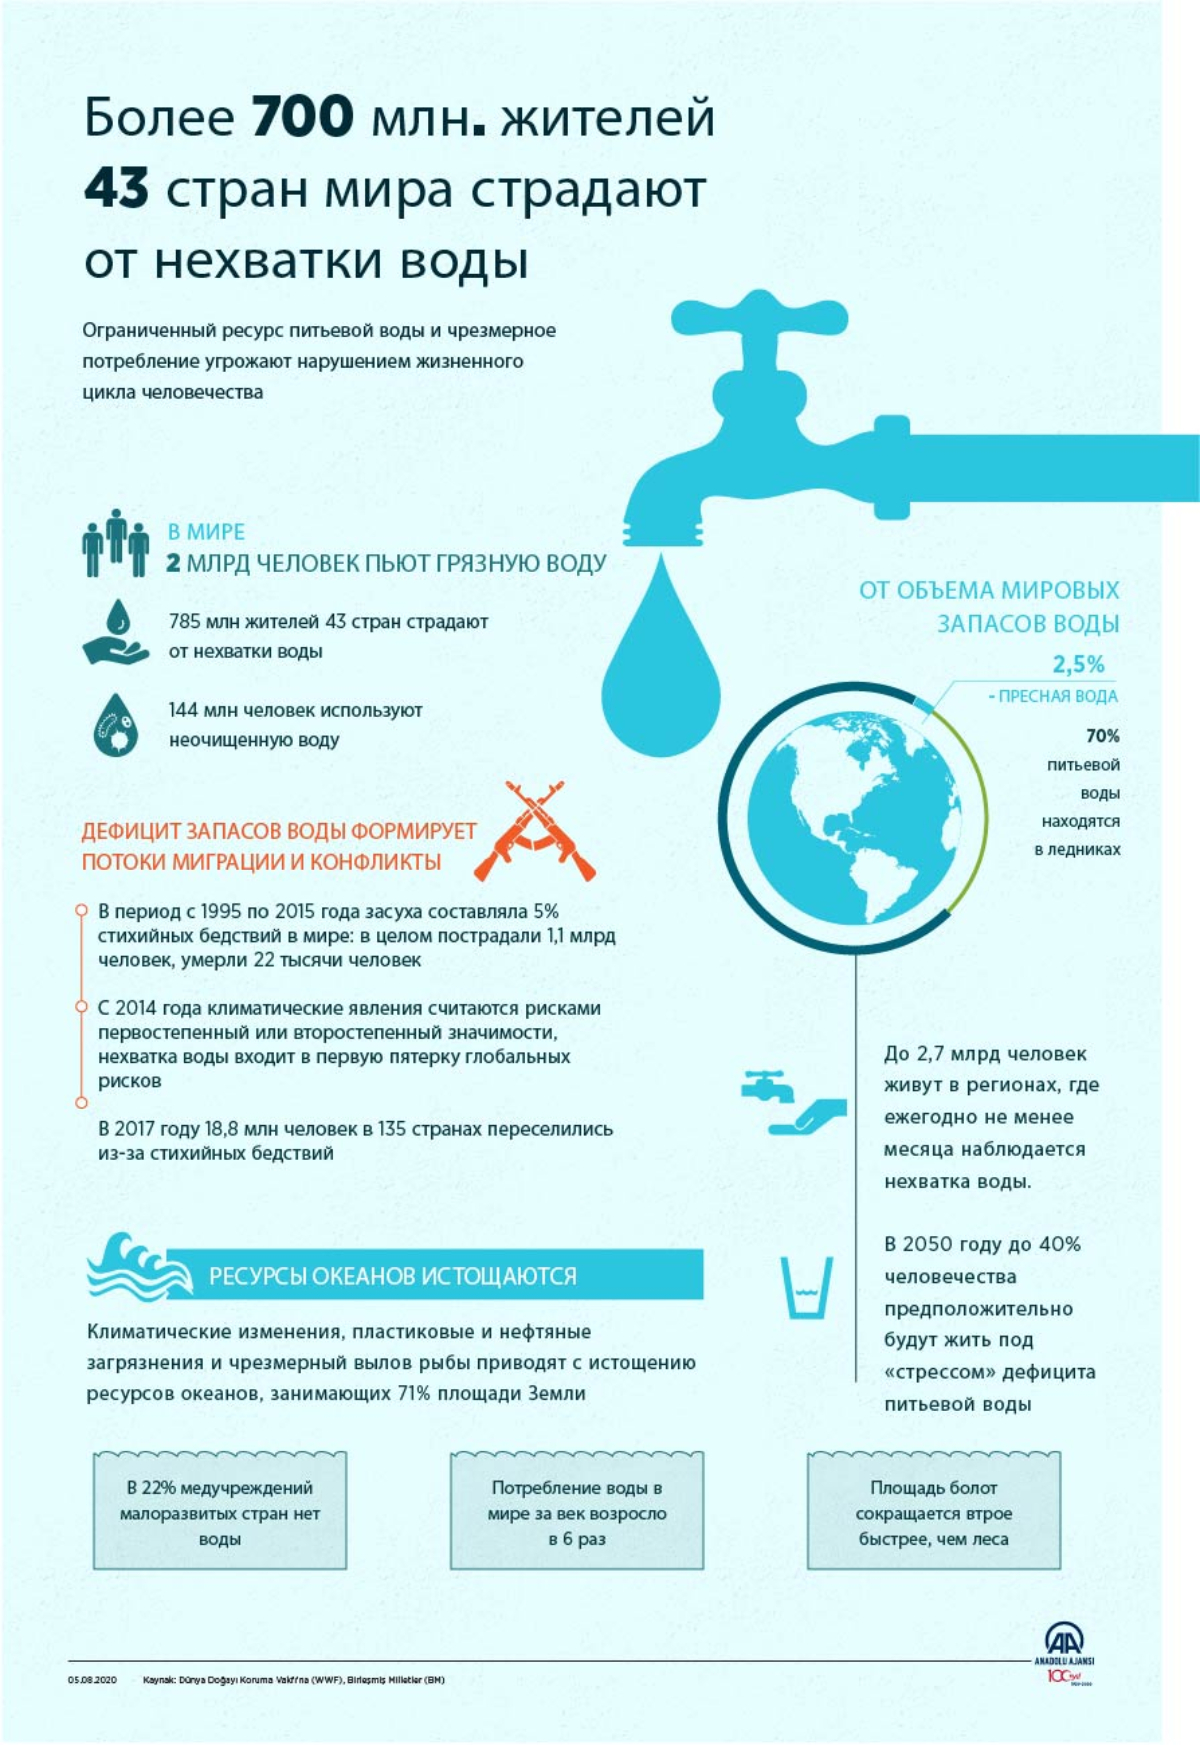 Более 700 млн. жителей 43 стран мира страдают от нехватки воды